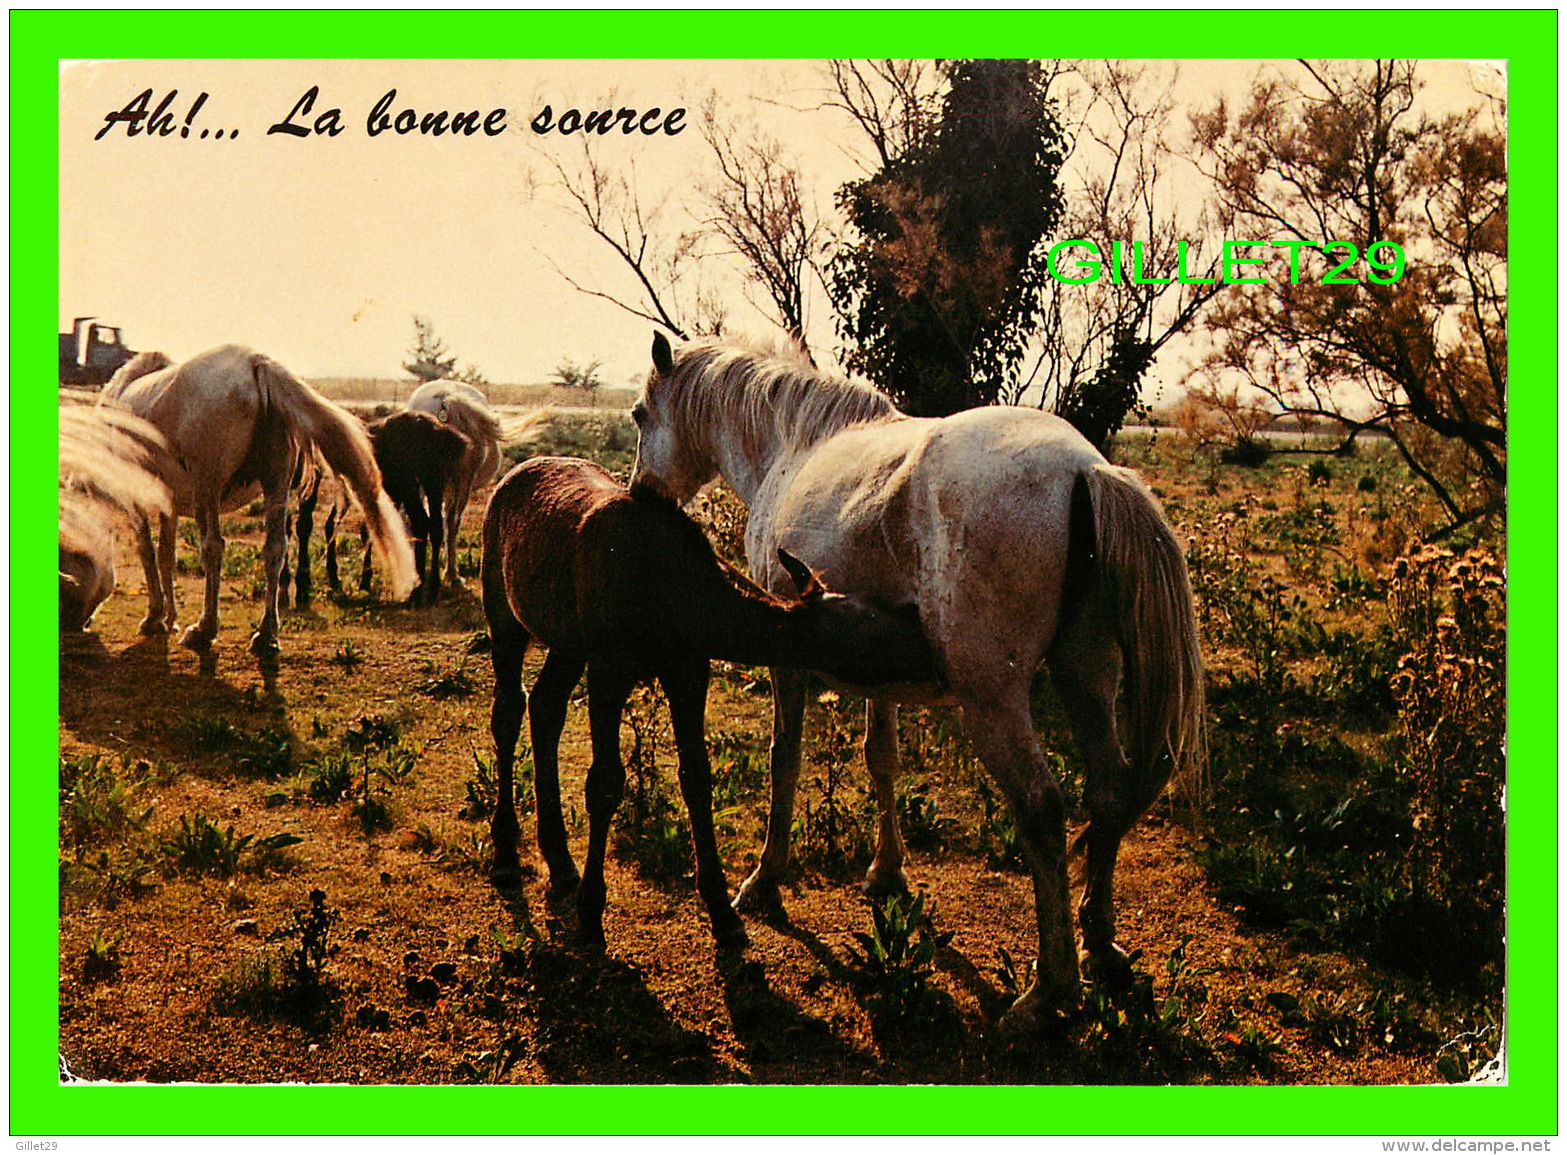 CHEVAUX - HORSES - AH! ... LA BONNE SOURCE -  EDITION DERIAZ BAULMES - CIRCULÉE EN 1984 - - Chevaux